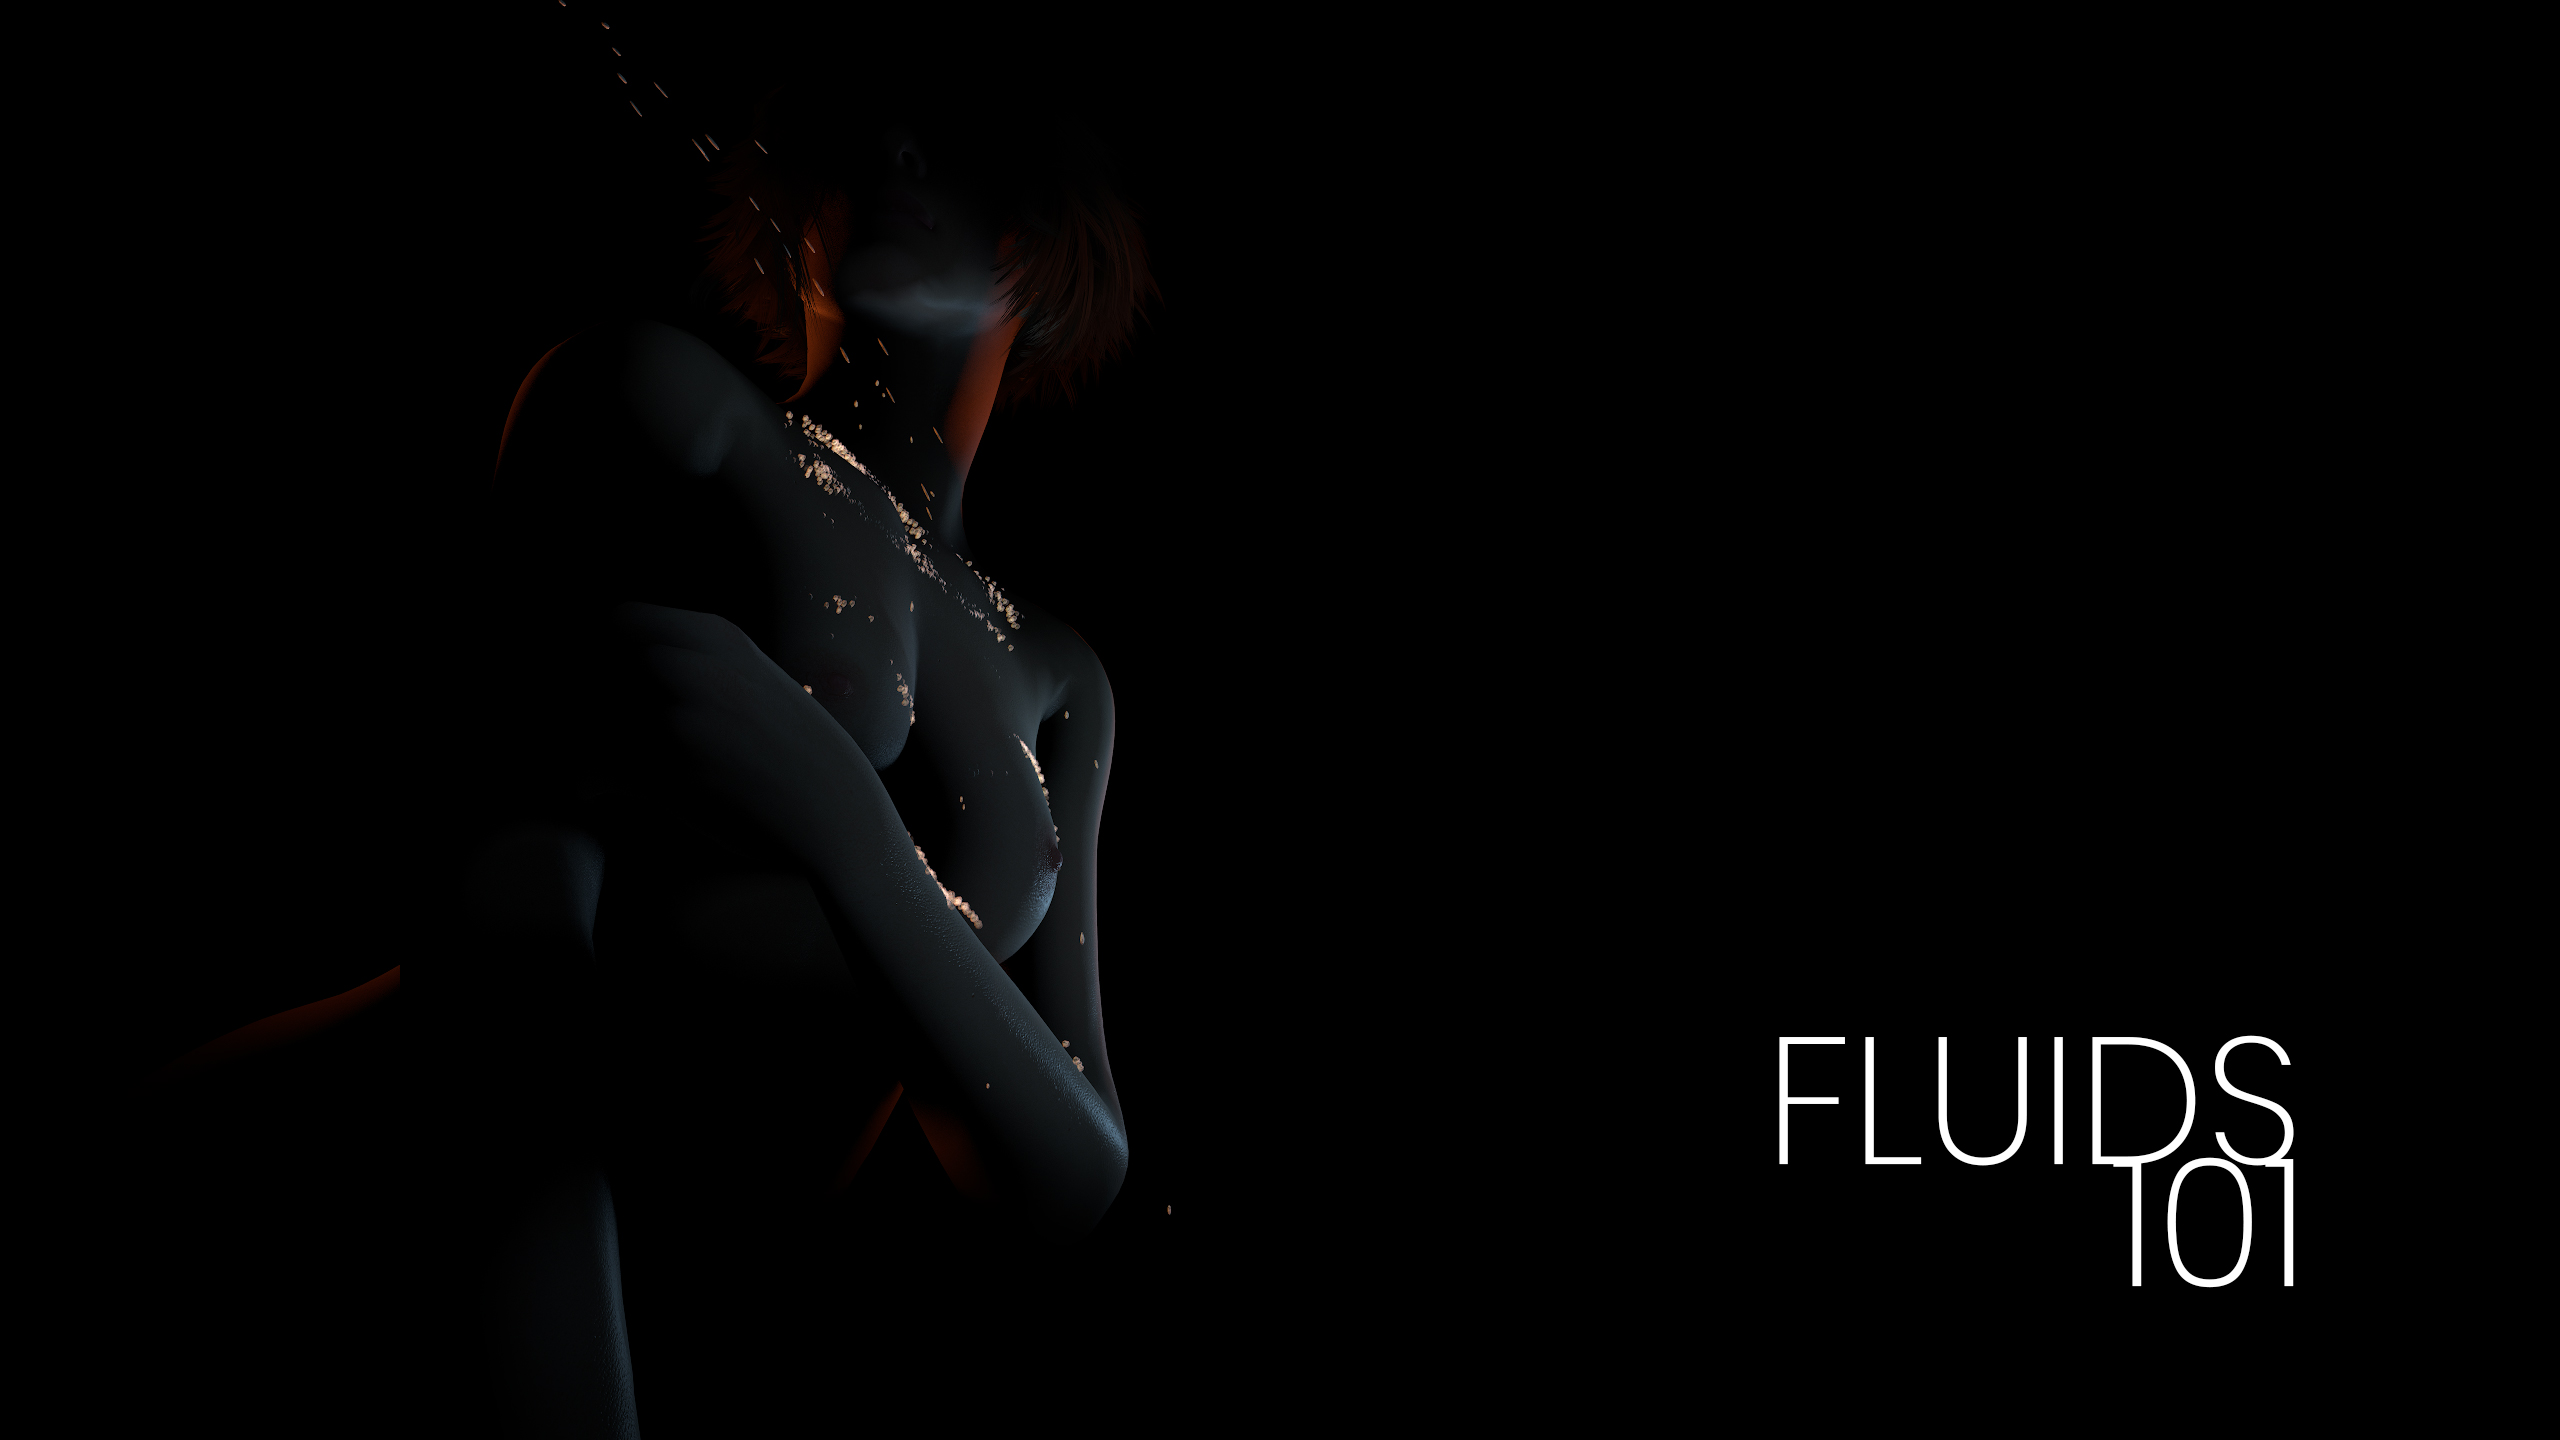 fluids-101-title.jpg